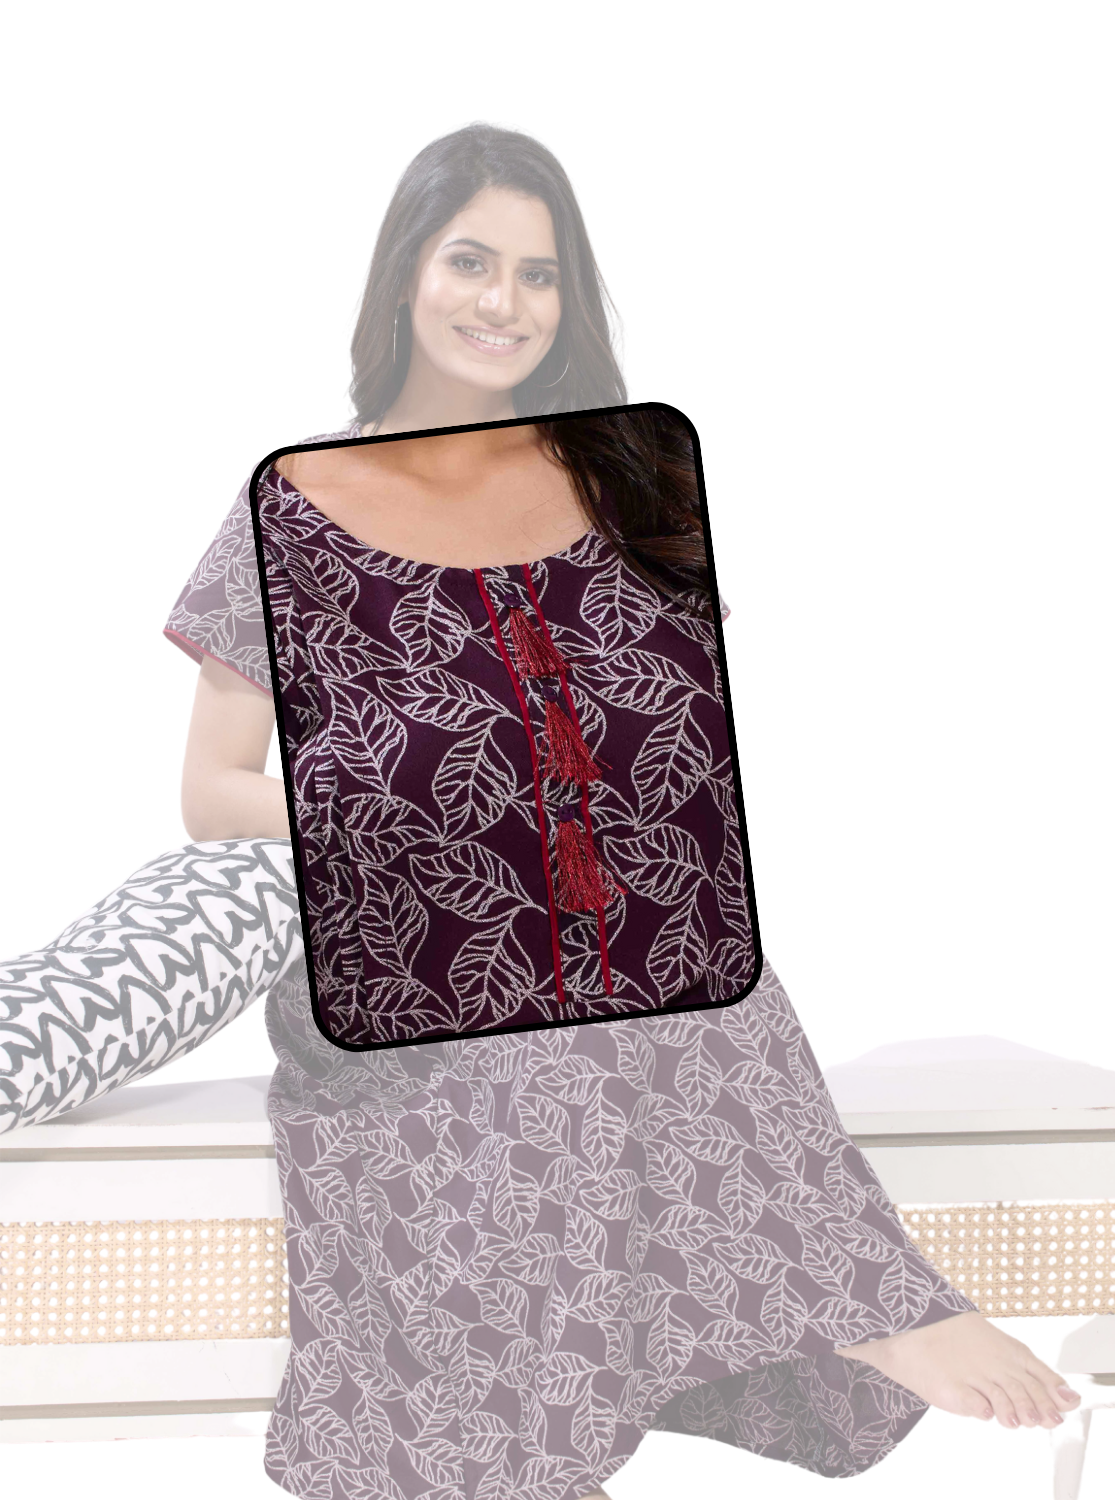 New MANGAI Alpine KURTI Style | Beautiful Stylish KURTI Model | Half Sleeve | Fresh Collection's for Stylish Women's